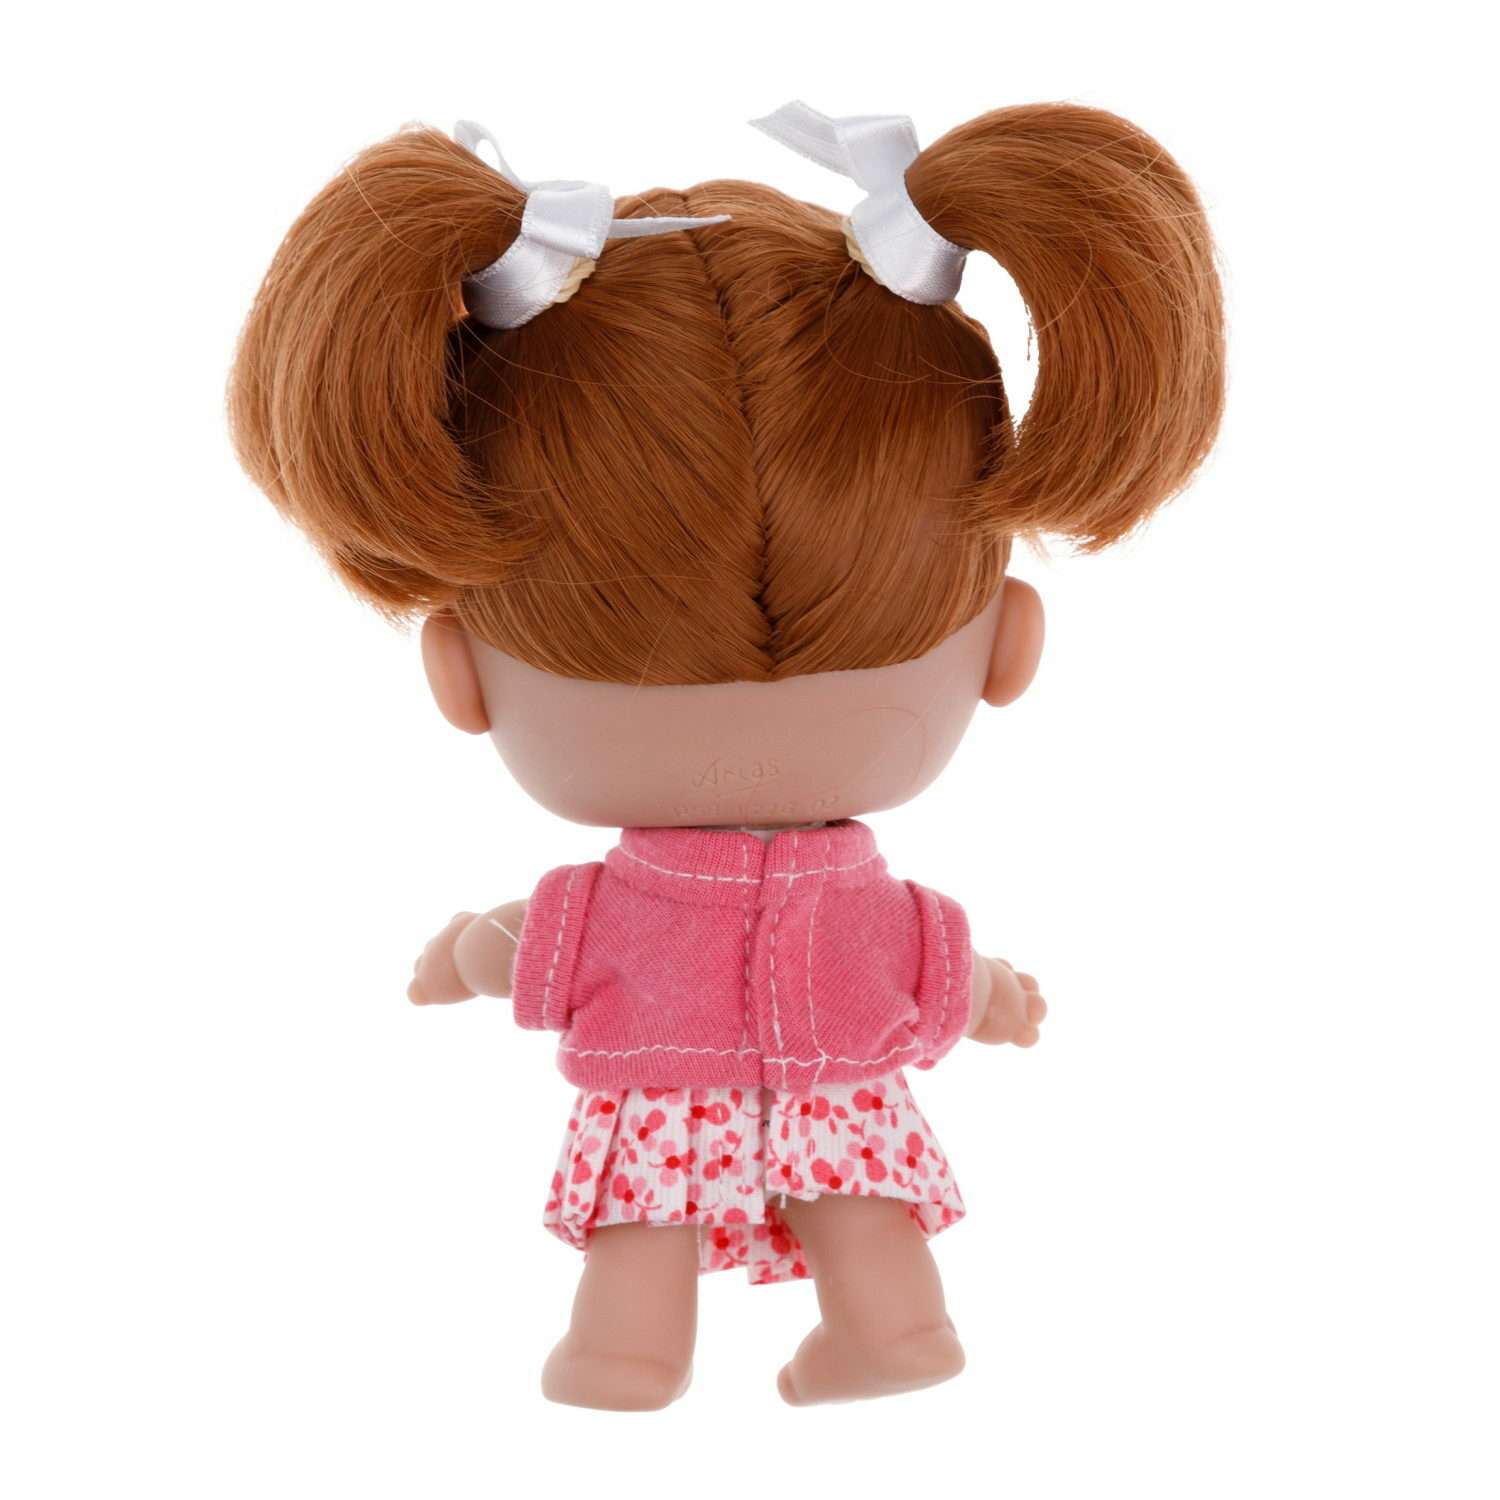 Кукла Arias elegance pequitas с рыжими волосами c cоской в юбке в цветочек и розовой кофточке 17 см Т19780-7 - фото 4